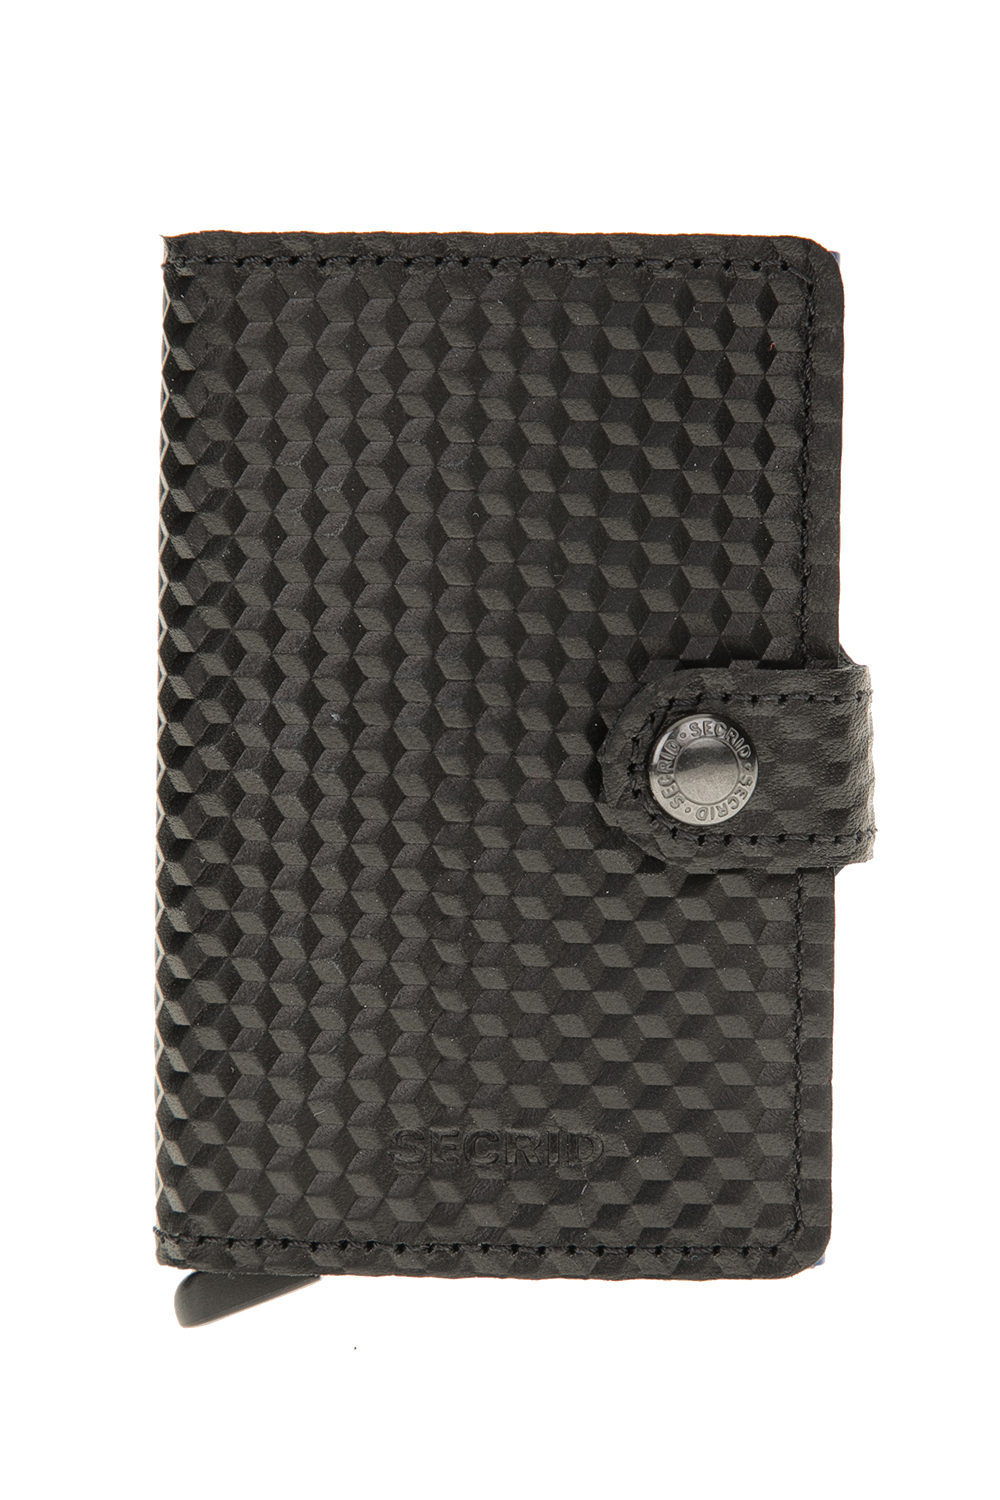 SECRID – Θηκη καρτων SECRID Miniwallet Cubic μαυρη